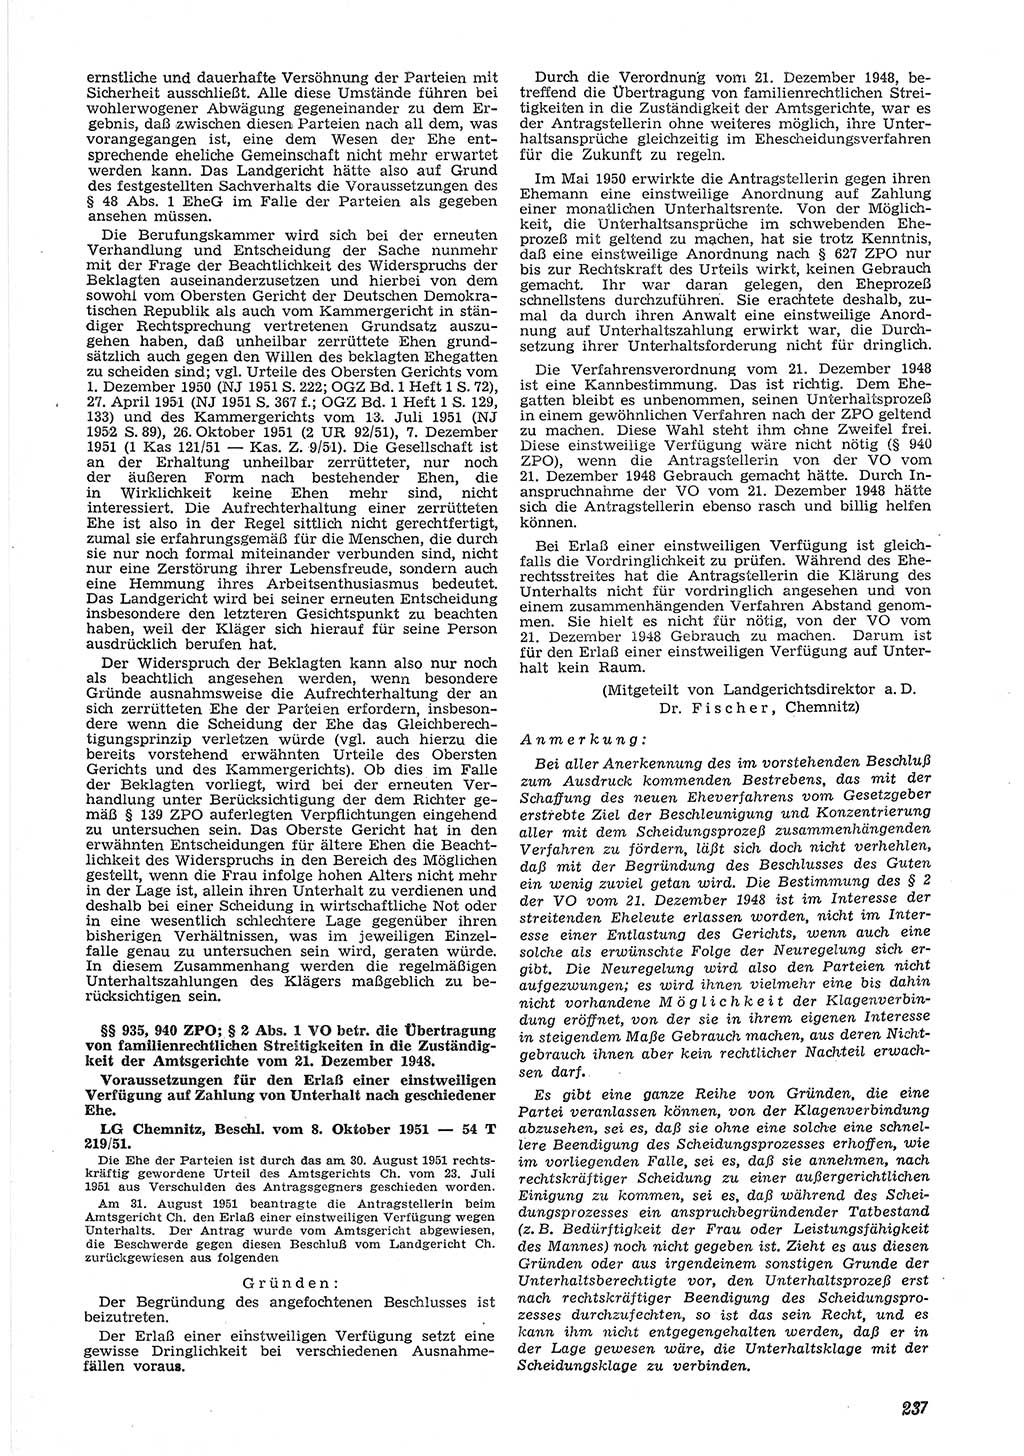 Neue Justiz (NJ), Zeitschrift für Recht und Rechtswissenschaft [Deutsche Demokratische Republik (DDR)], 6. Jahrgang 1952, Seite 237 (NJ DDR 1952, S. 237)